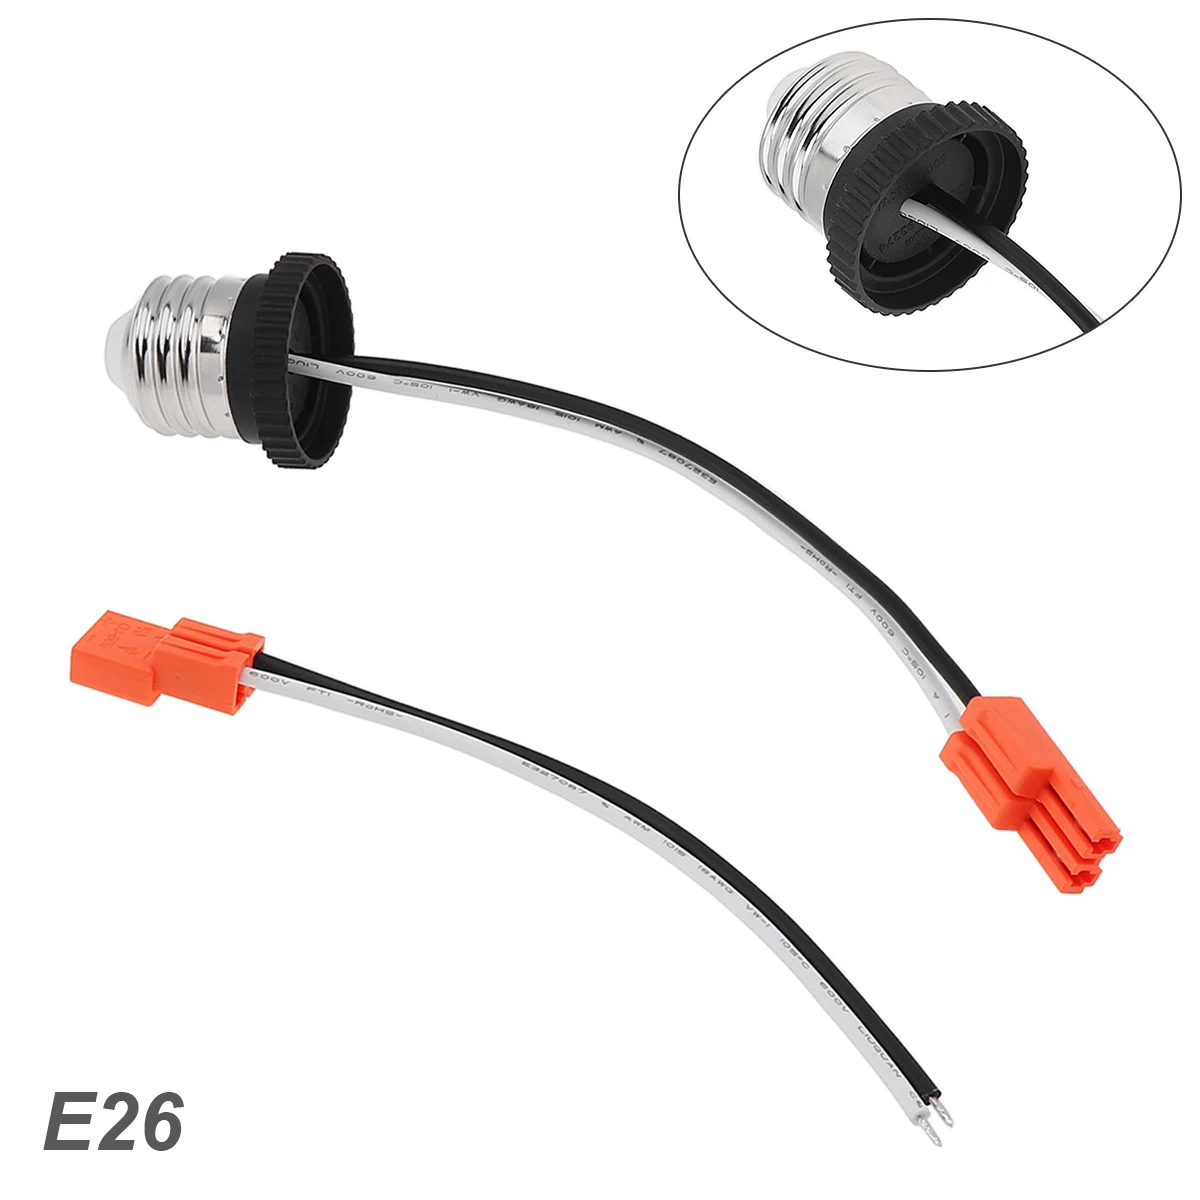 E26 Sockel adapterst ecker mittlere Basis stecker schraube in Glühbirnen fassung Pigtail für LED-Decken leuchten Down light